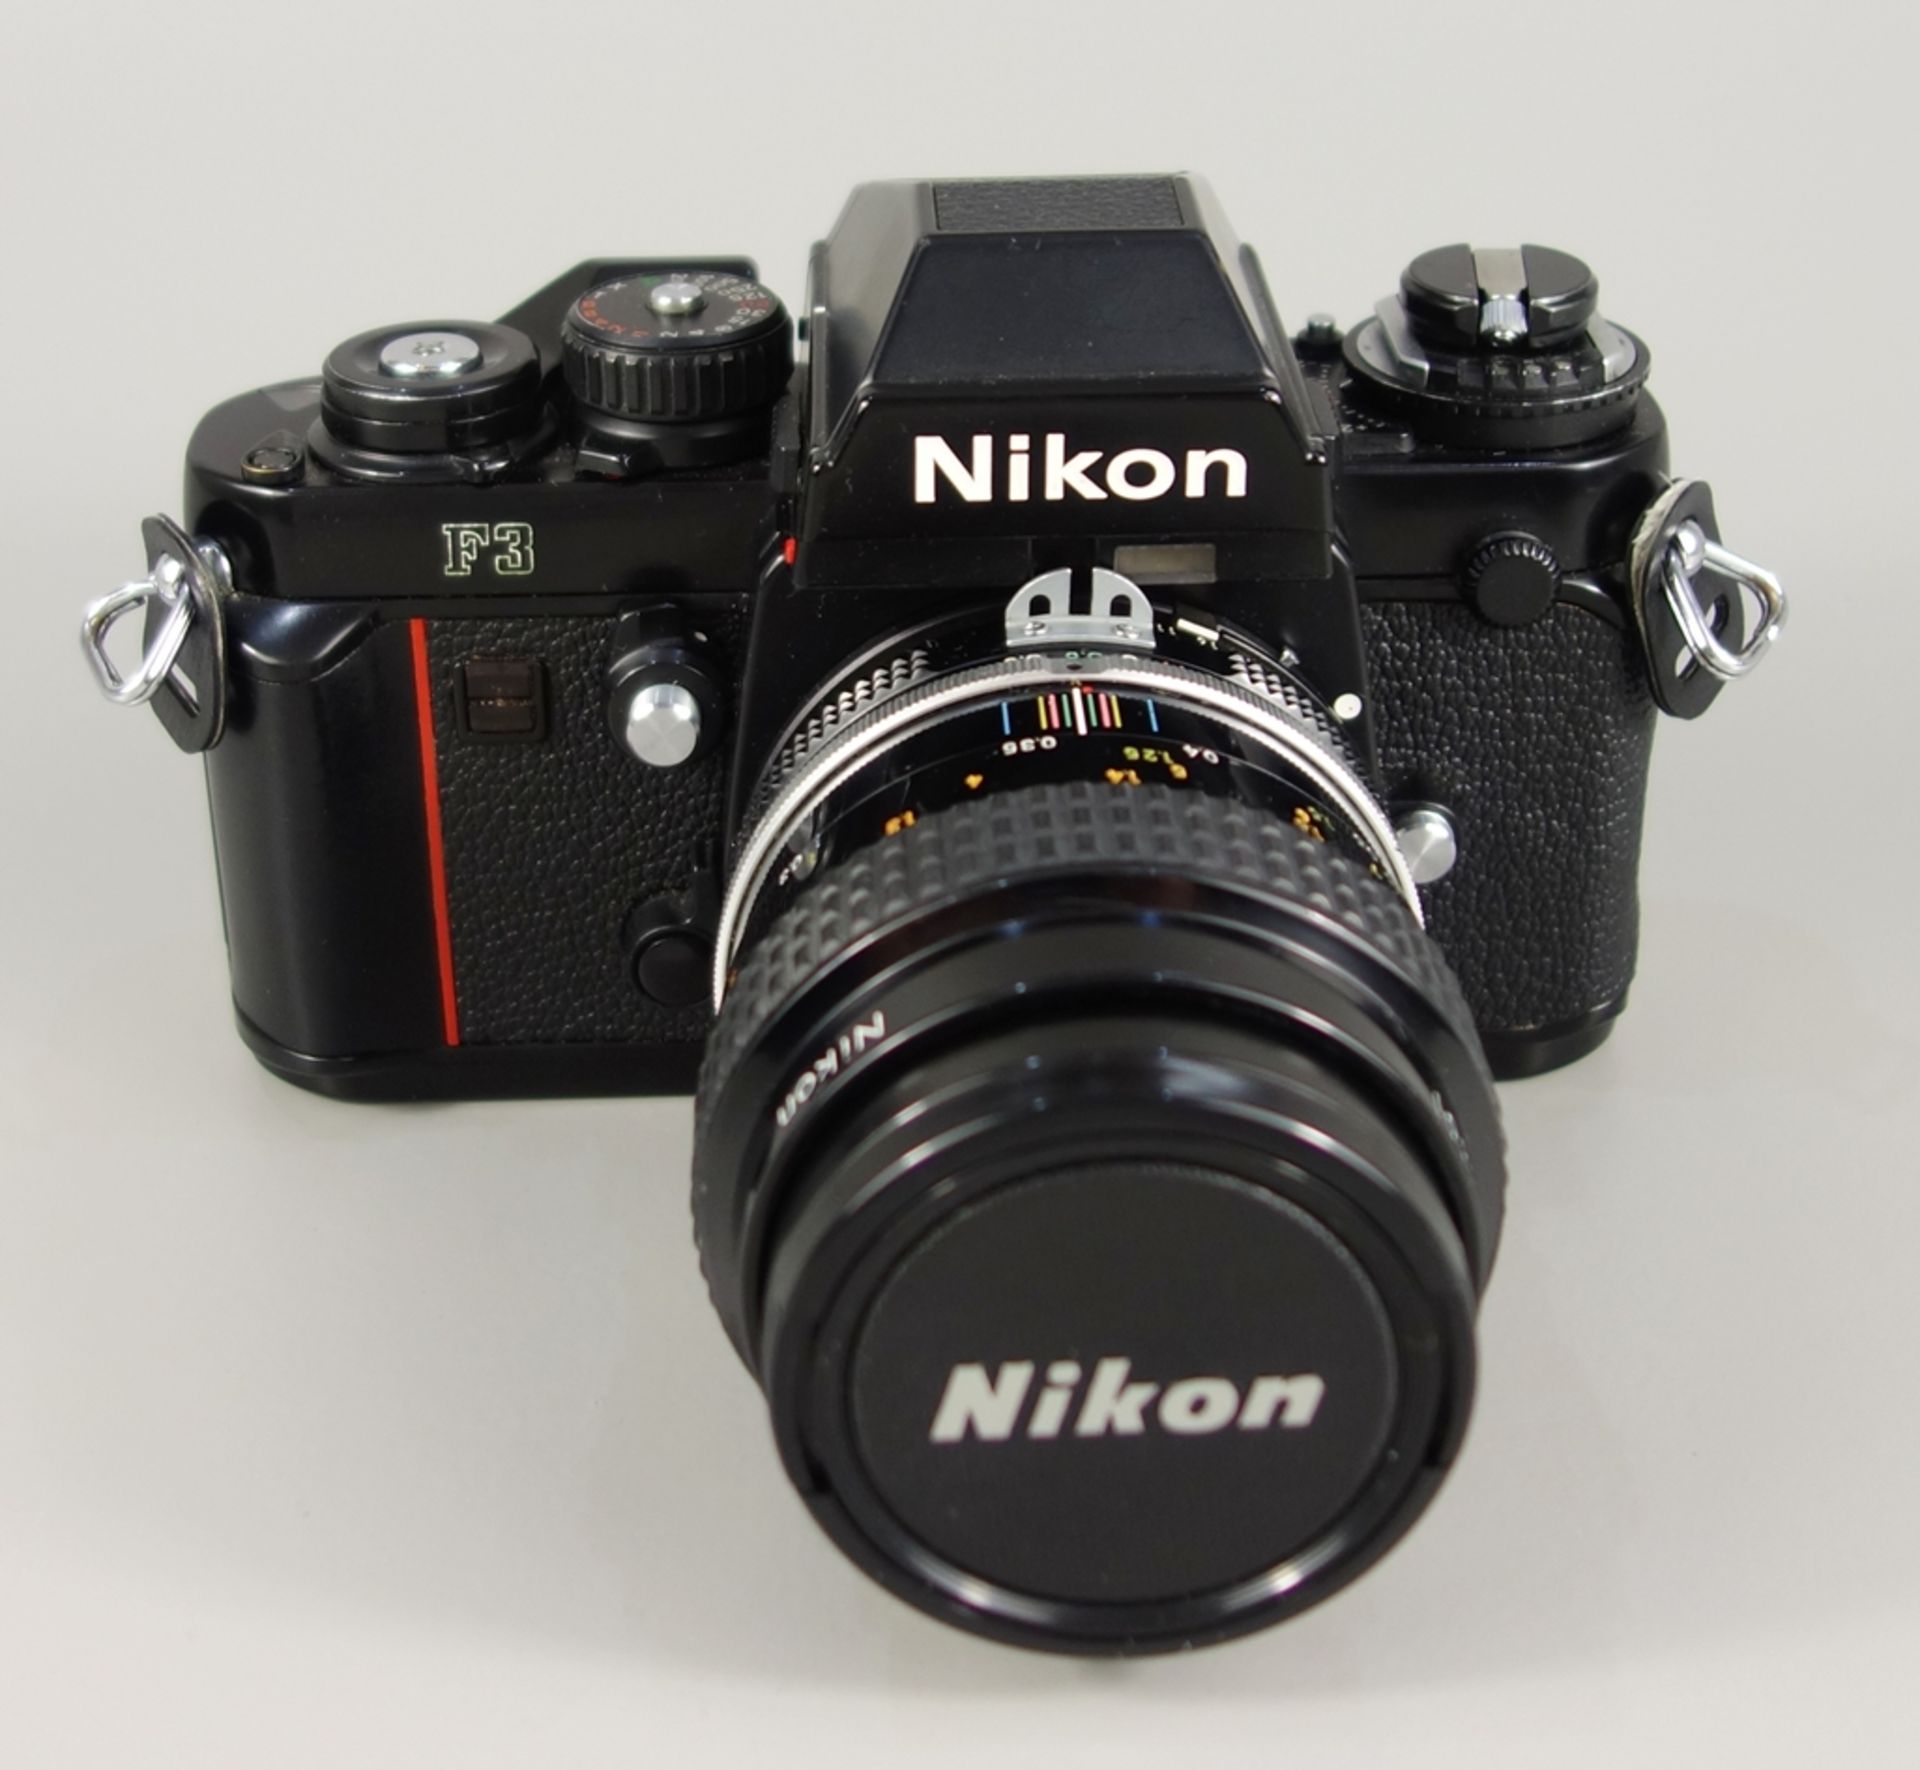 Nikon F3, Spiegelreflexkamera, schwarz, 1980er Jahre, Serien-Nr. 1212899, mit Objektiv Nikon Micro- - Bild 2 aus 5